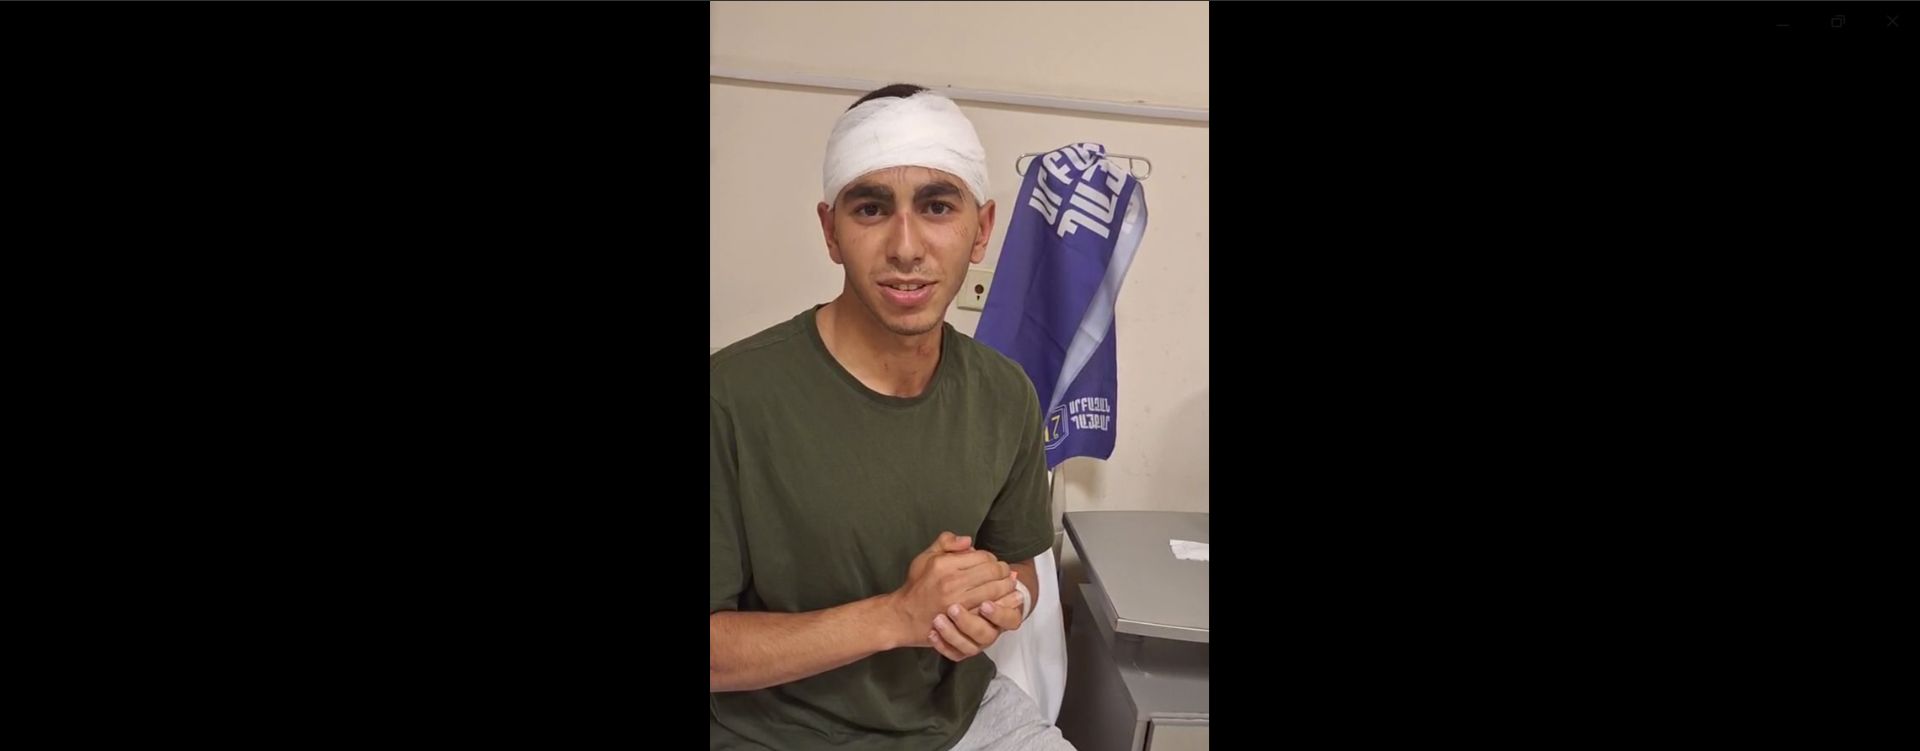 Կարմիր բերետավորի կոշիկի հետքը՝ ակցիայի մասնակից Արման Սարգսյանի դեմքին (լուսանկար, տեսանյութ)